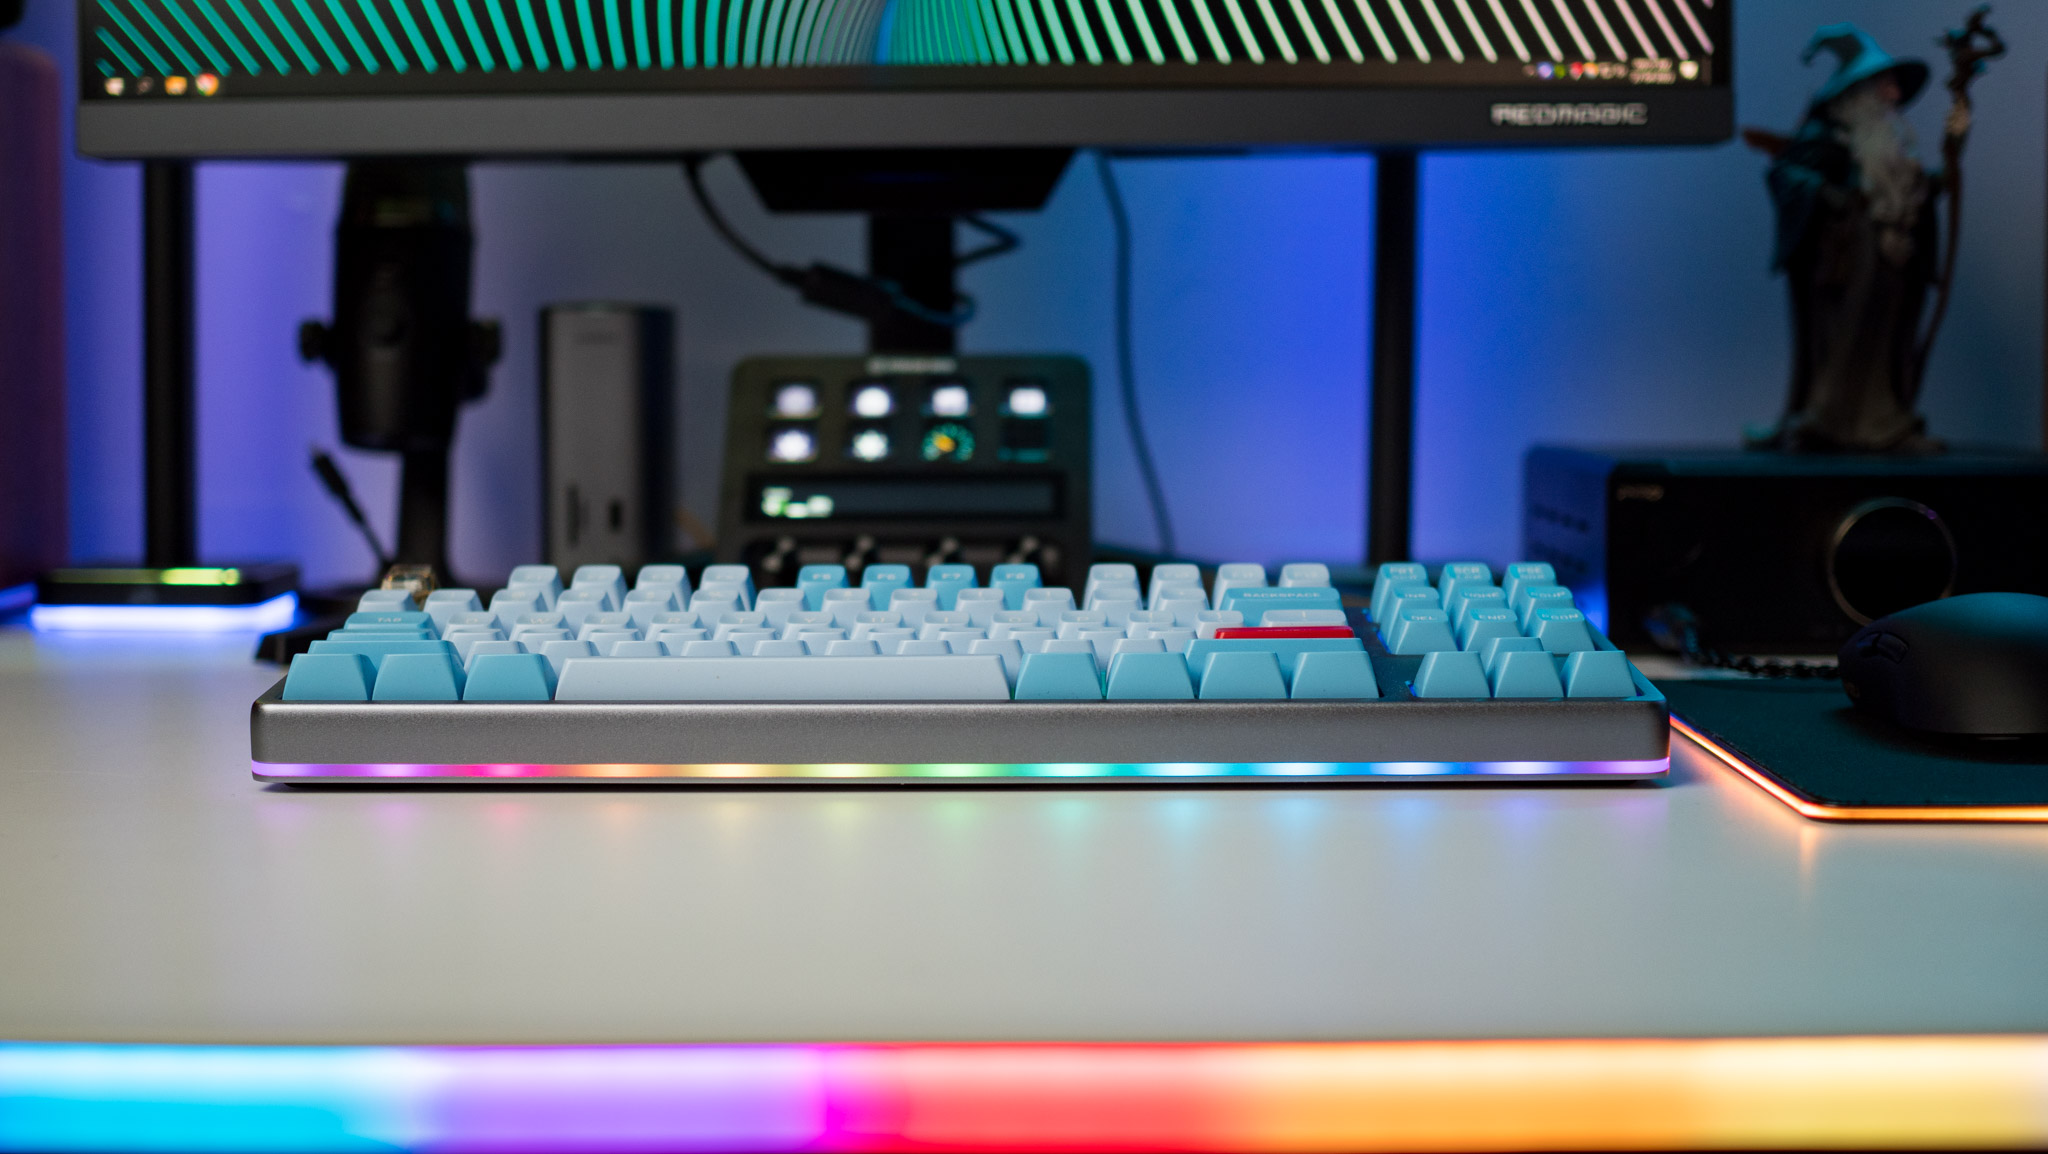 Iluminación RGB en el teclado Drop Americana resaltado contra el primer plano RGB